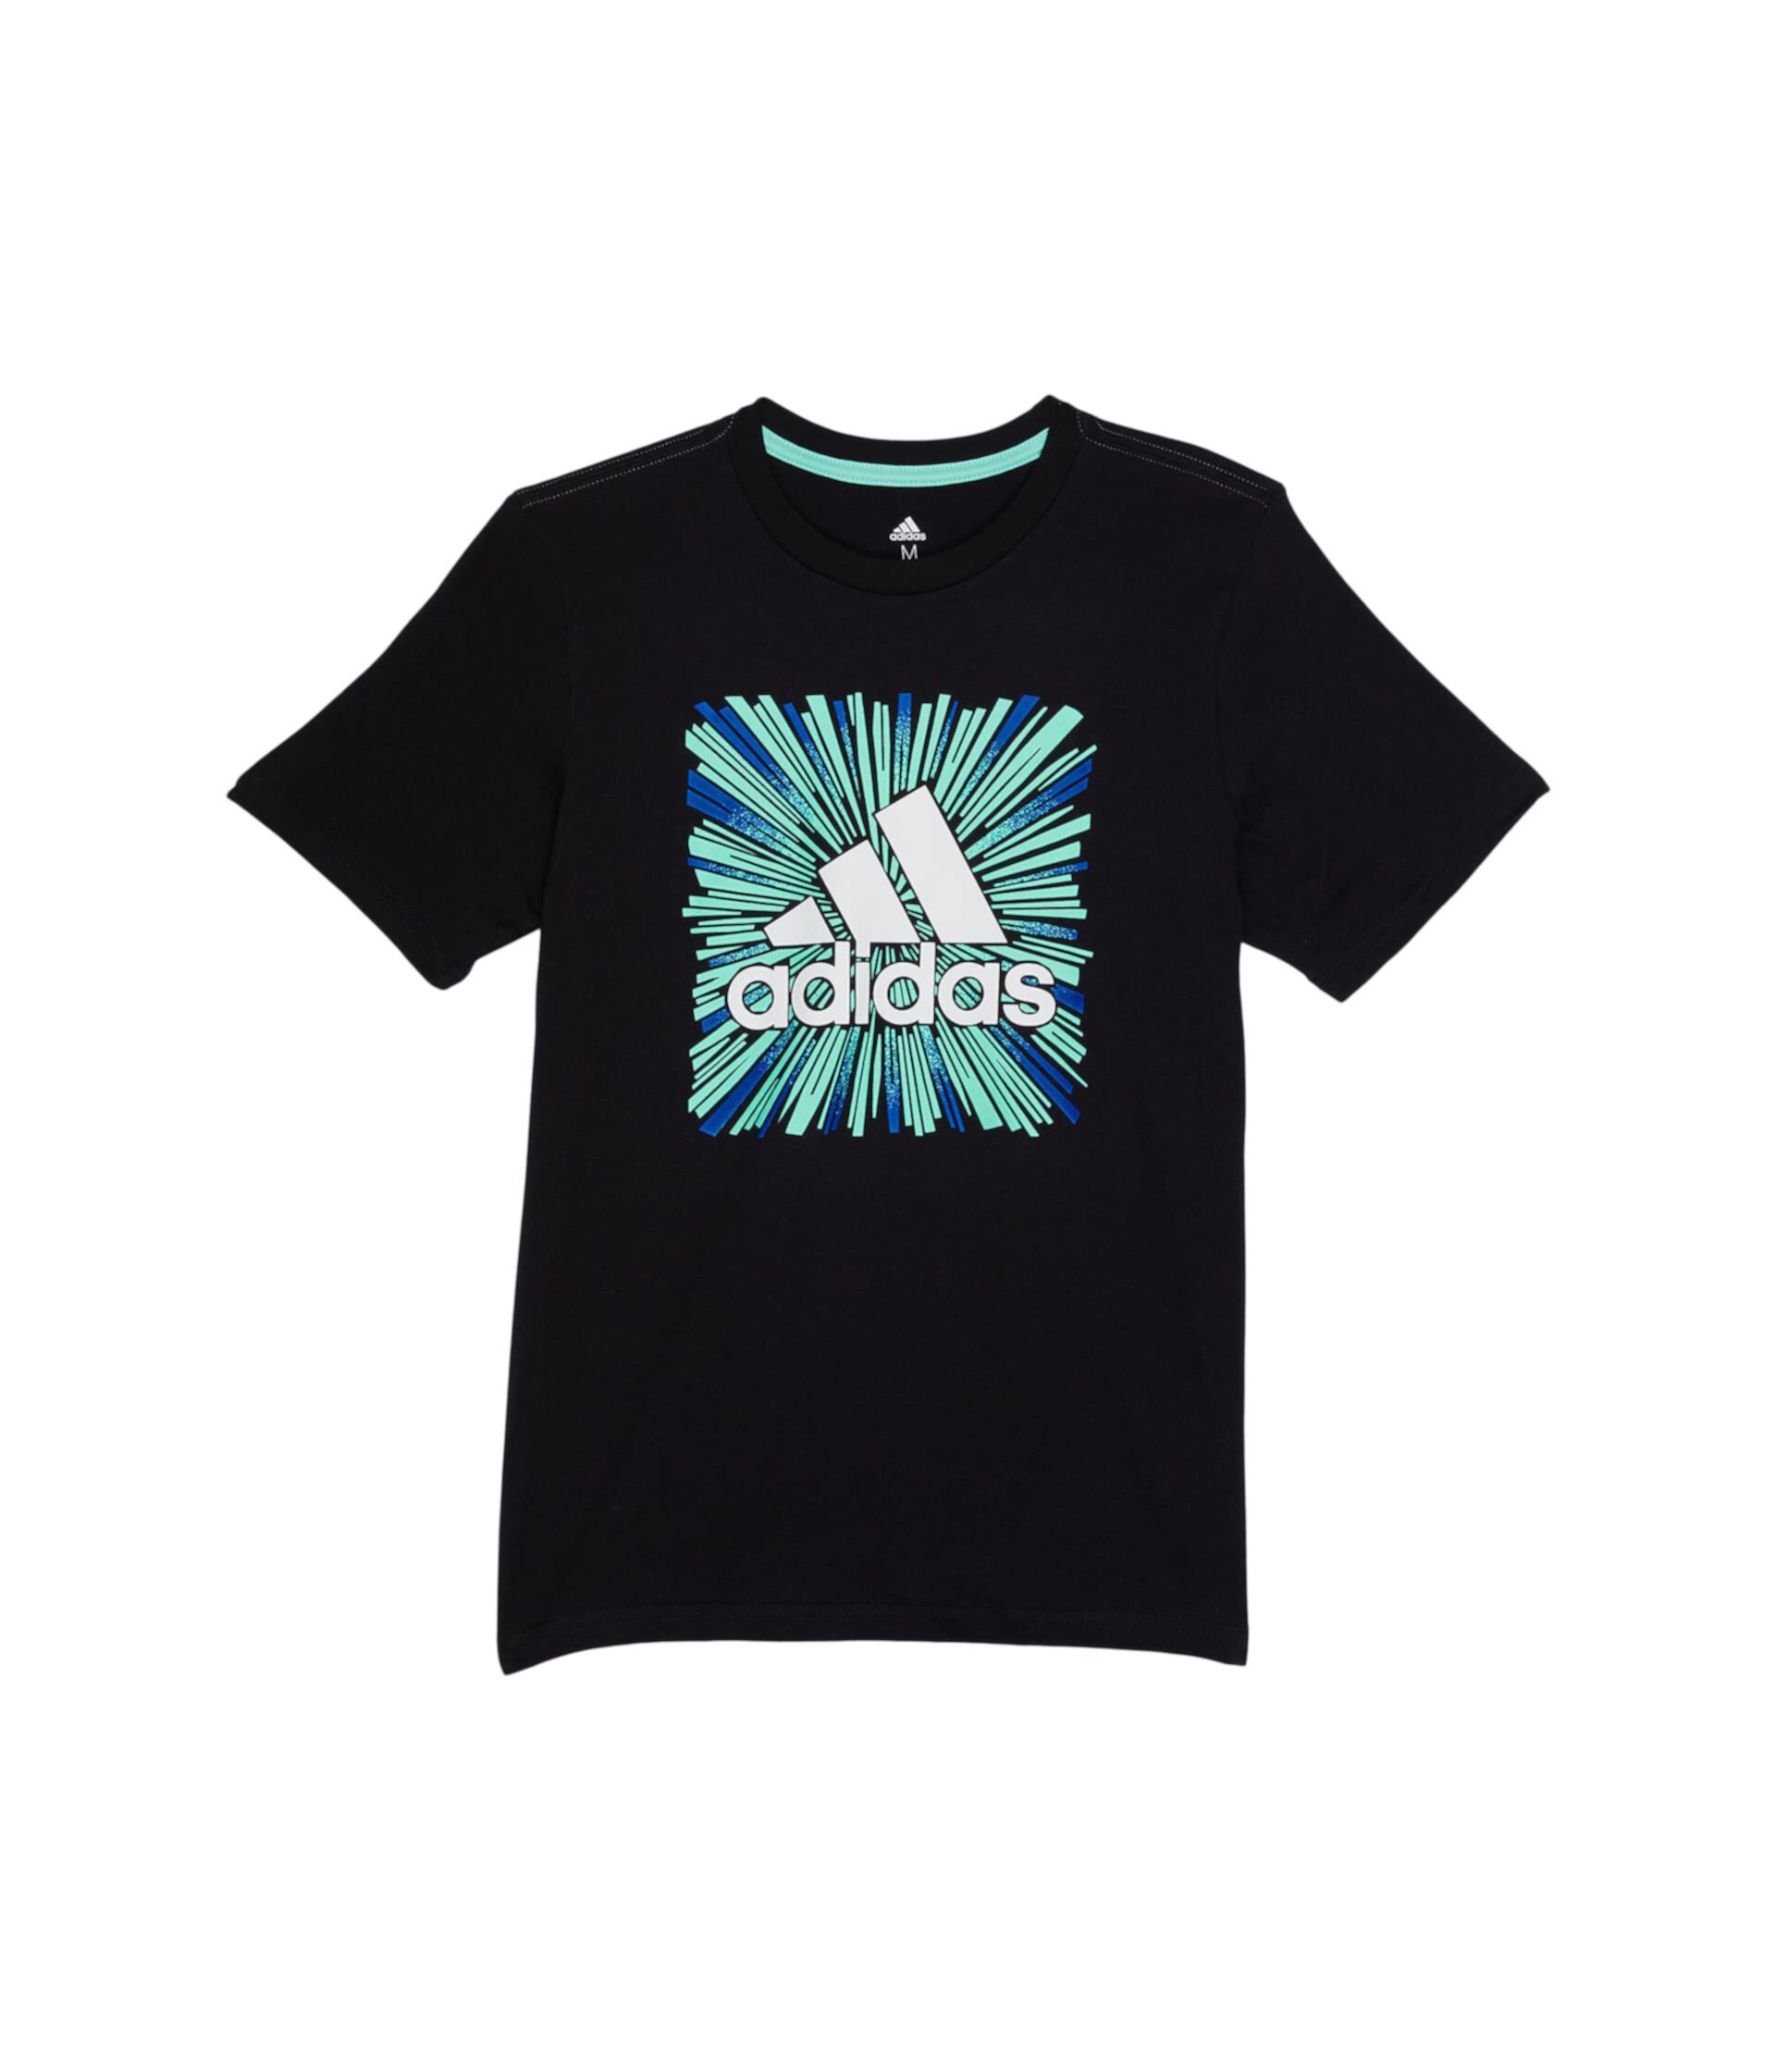 Спортивная футболка Optimist с короткими рукавами (для больших детей) Adidas